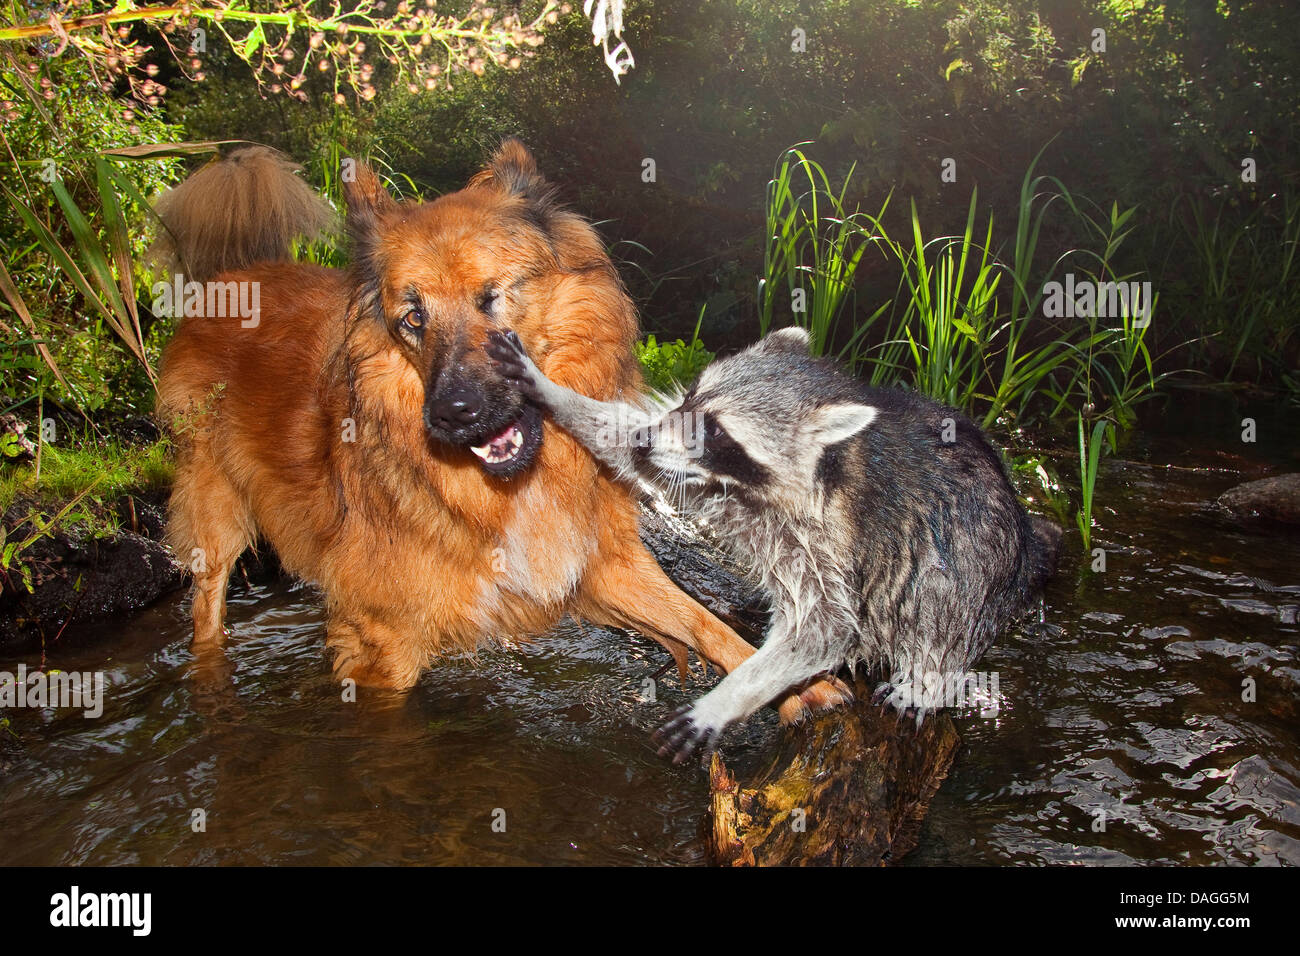 gemeinsamen Waschbär (Procyon Lotor), zahme Welpen eng befreundet mit Hund, spielen zusammen in einem Bach, Friedship zwischen Hund und wildes Tier, Deutschland Stockfoto